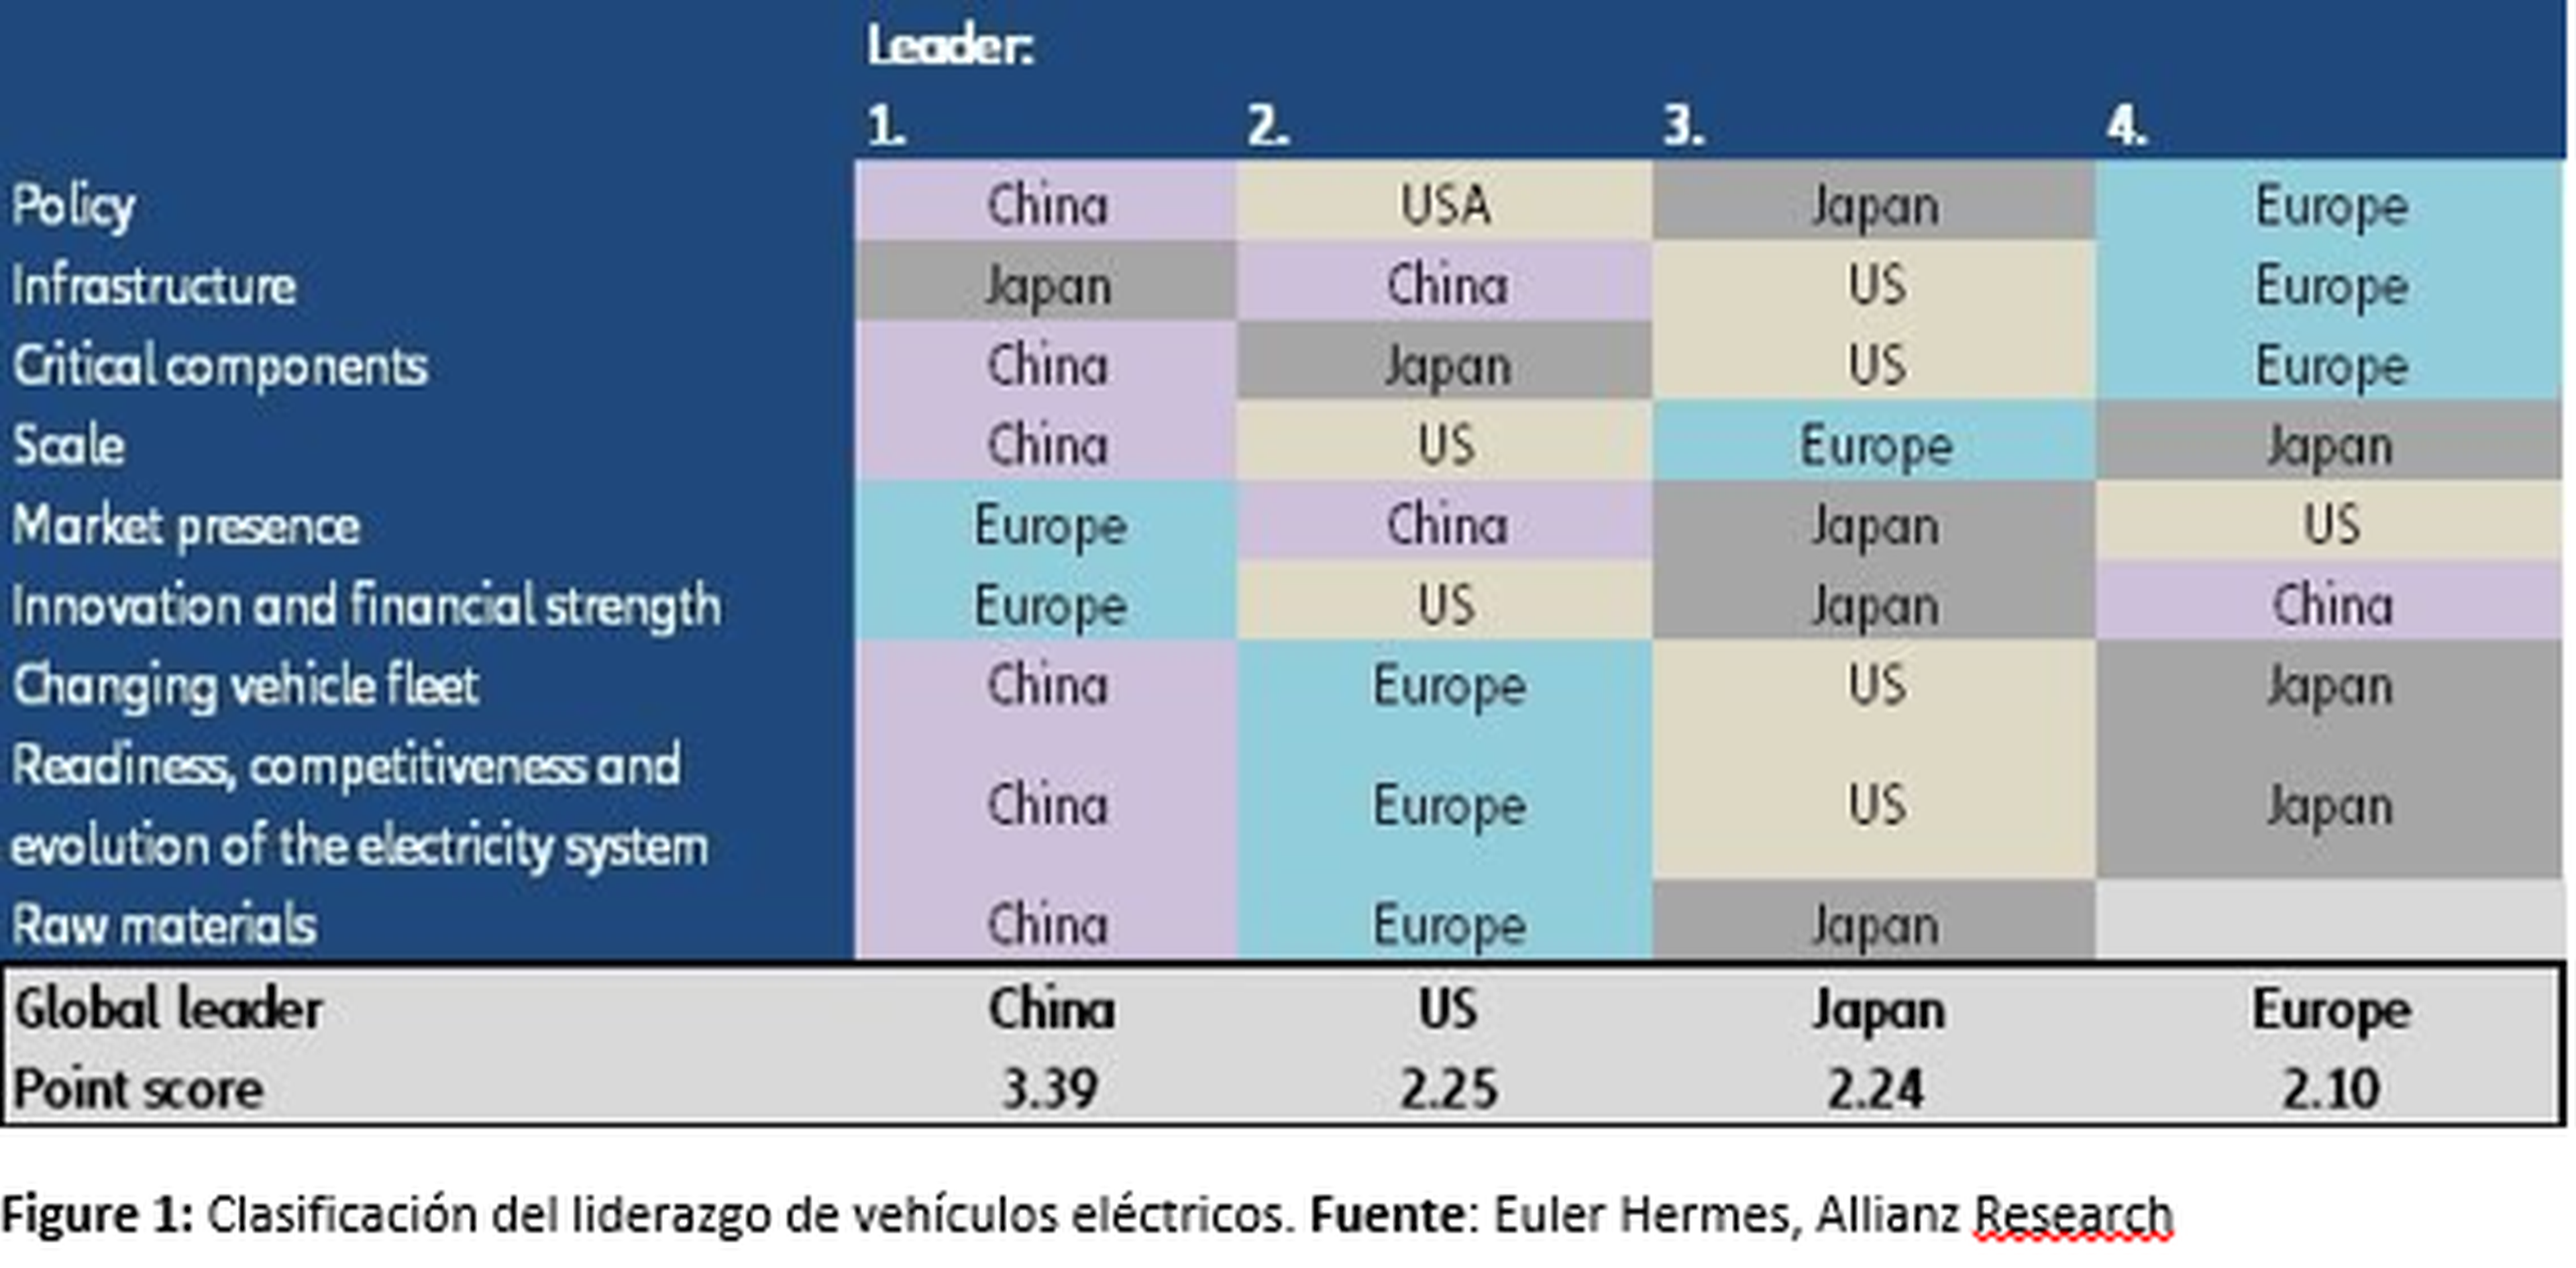 Puntuación dada por Euler Hermes para valorar el liderazgo en el desarrollo del coche eléctrico